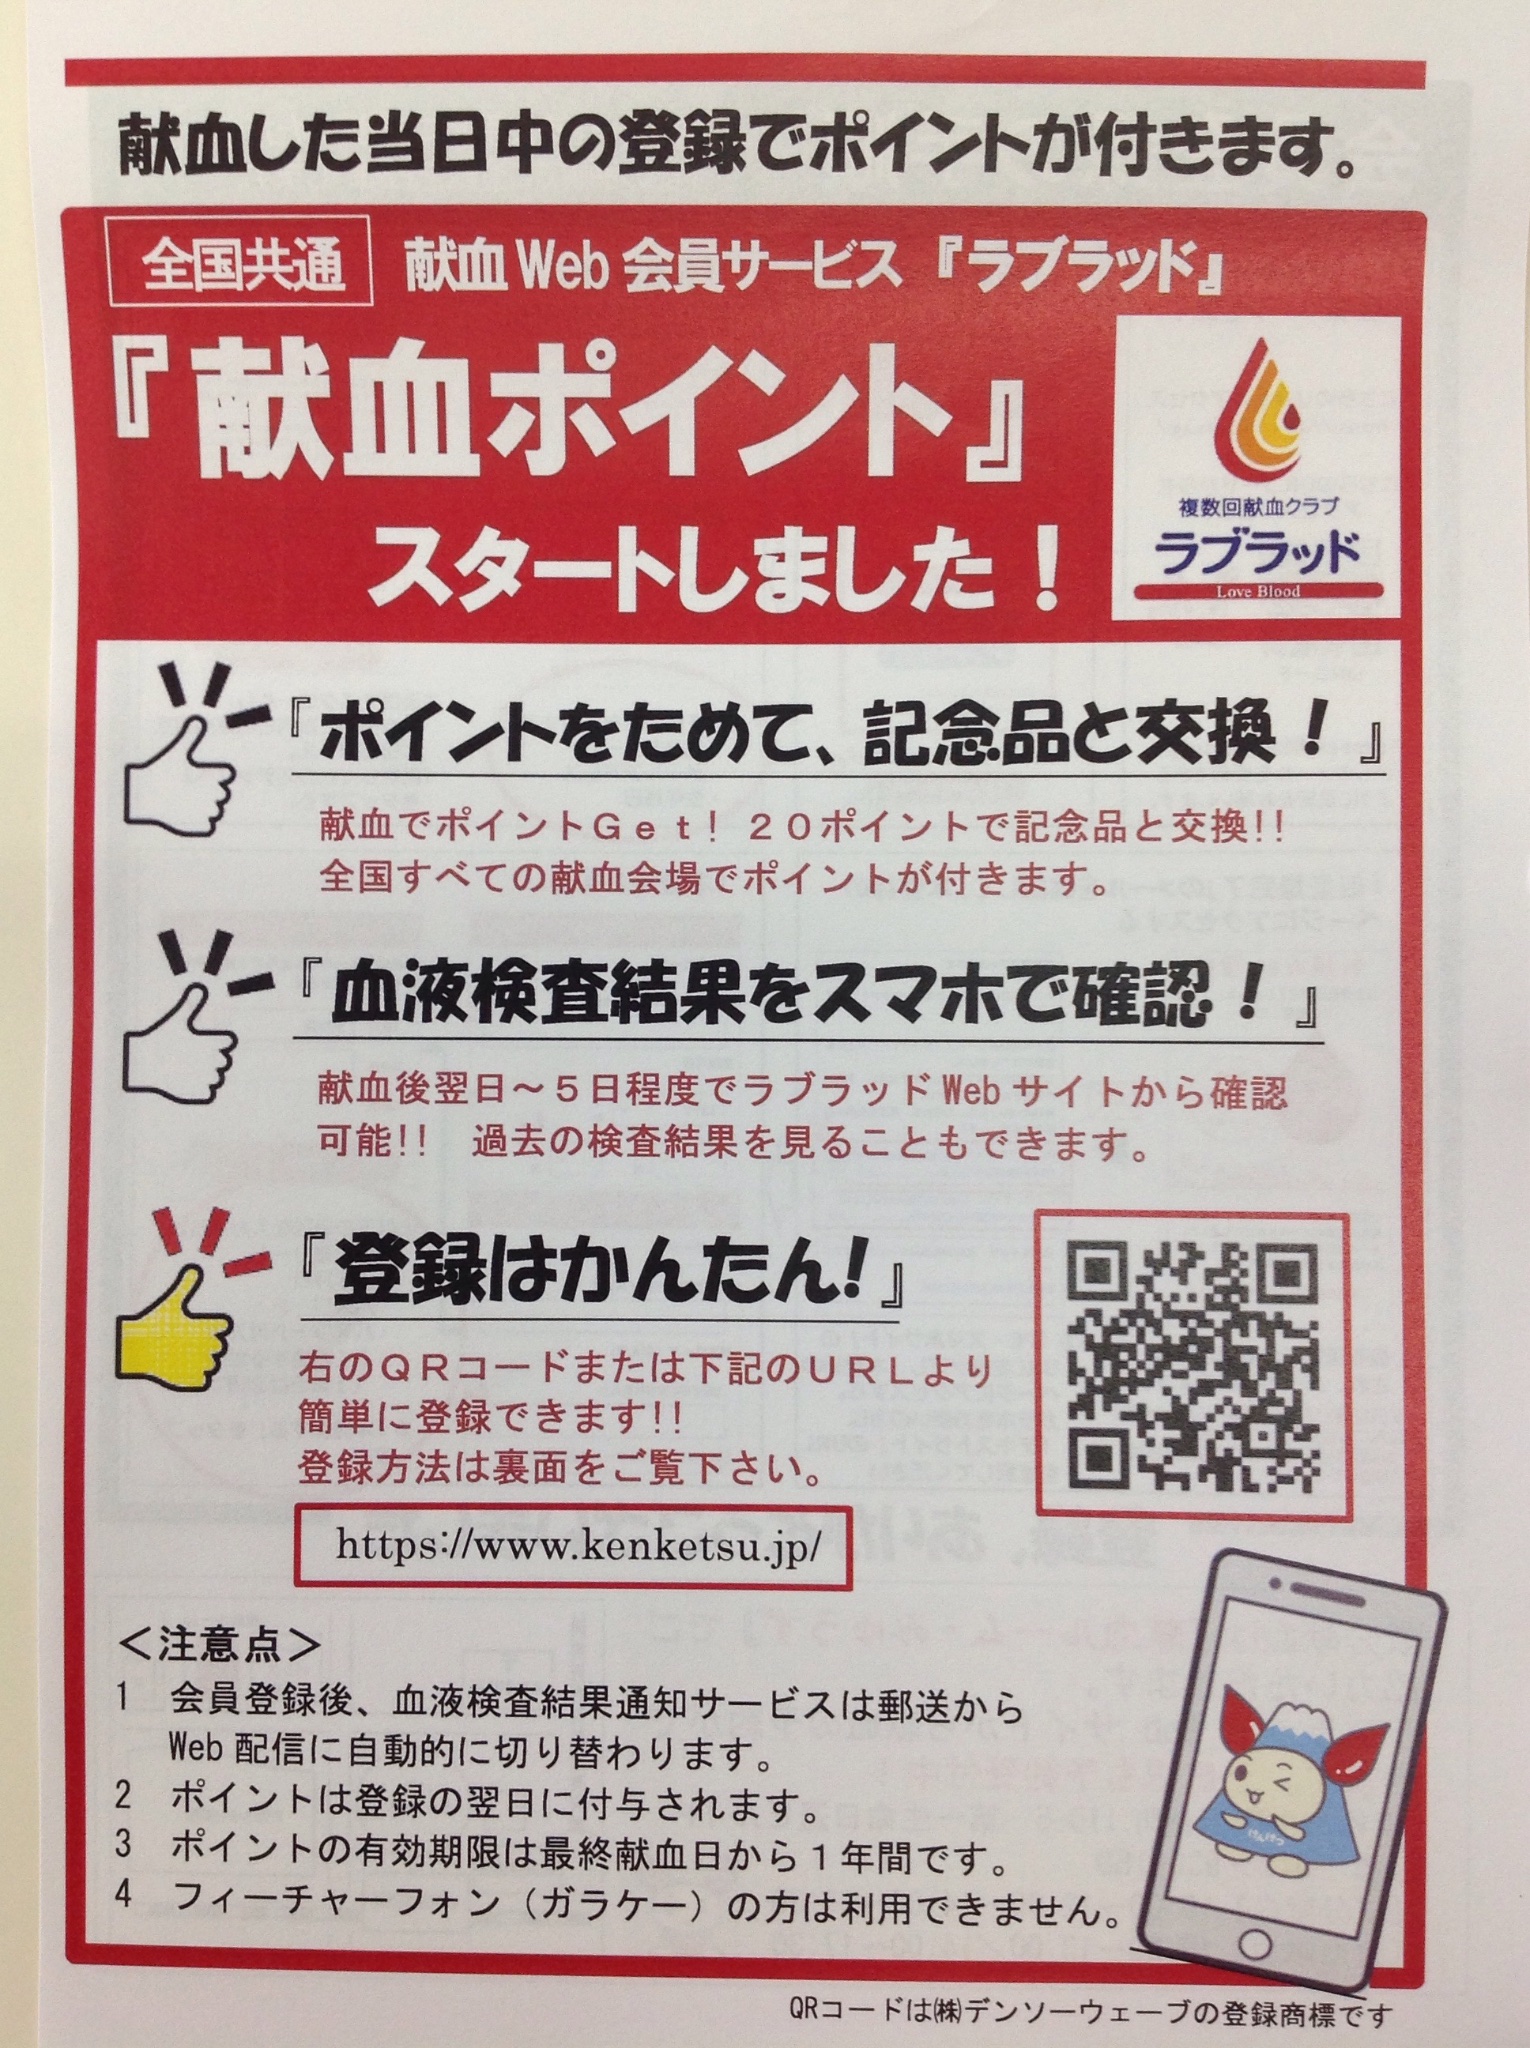 静岡県赤十字血液センター 公式 献血ルームみゅうず 混雑緩和にため 成分献血 全血献血ともにご予約をしていただいています 大変な時期ではありますが 患者さんは毎日血液を必要としています どうかご理解ご協力よろしくお願いします 献血